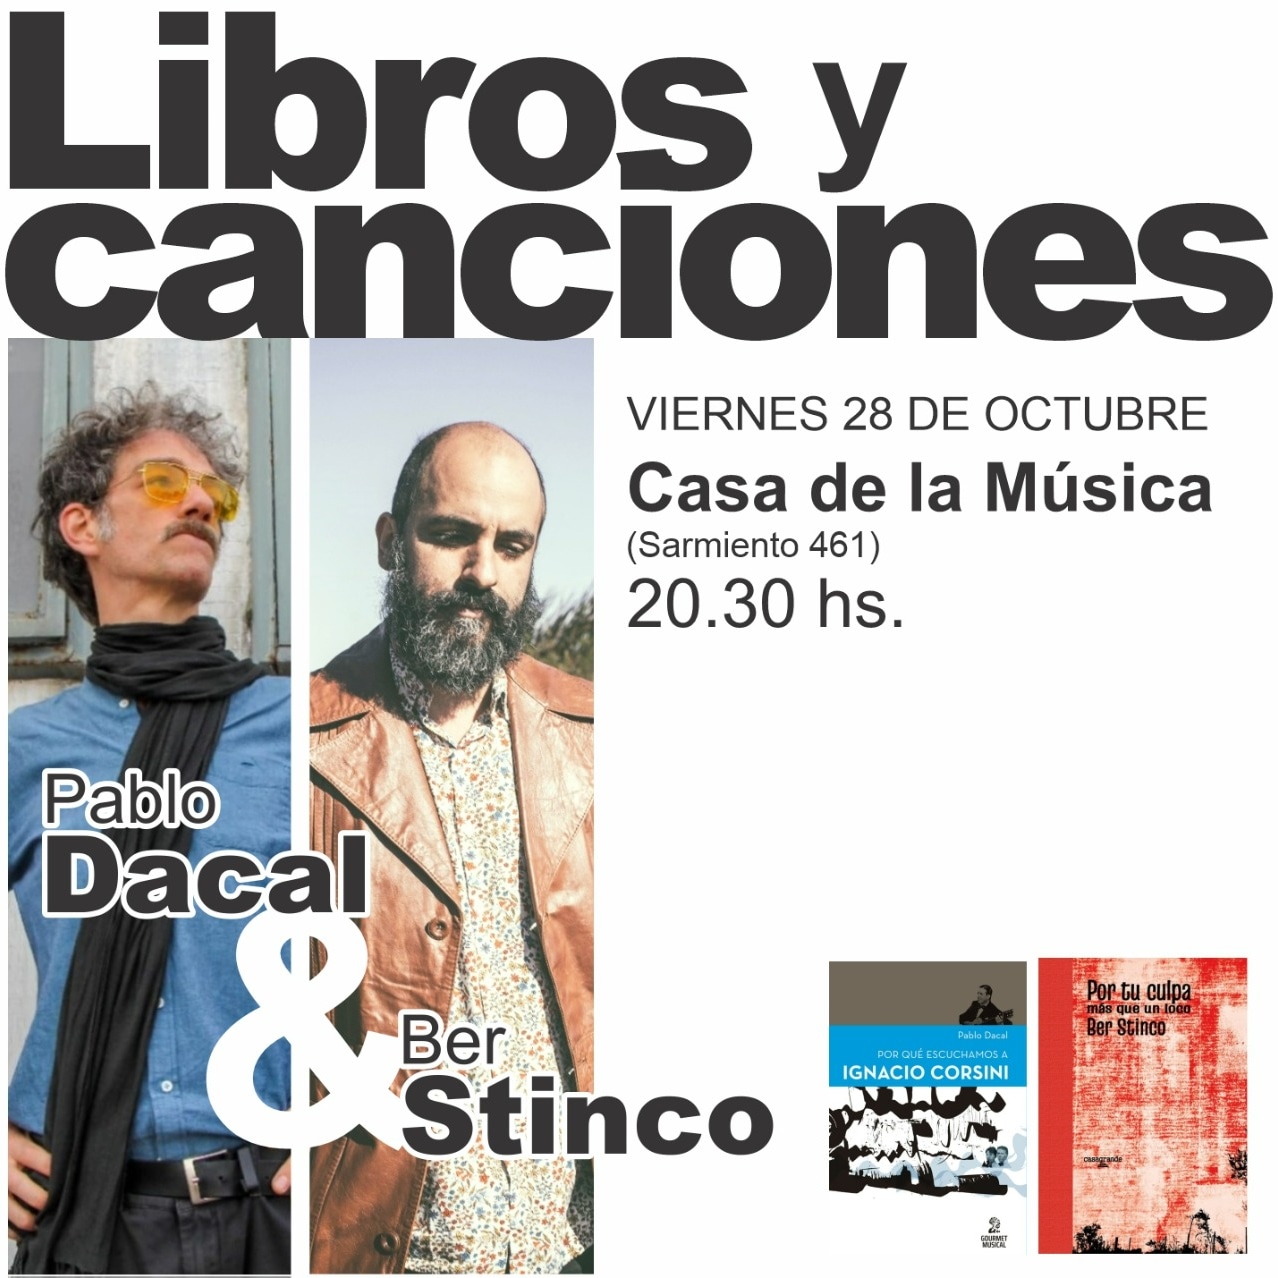 Libros y canciones en La Casa de la Música con Pablo Dacal y Ber Stinco